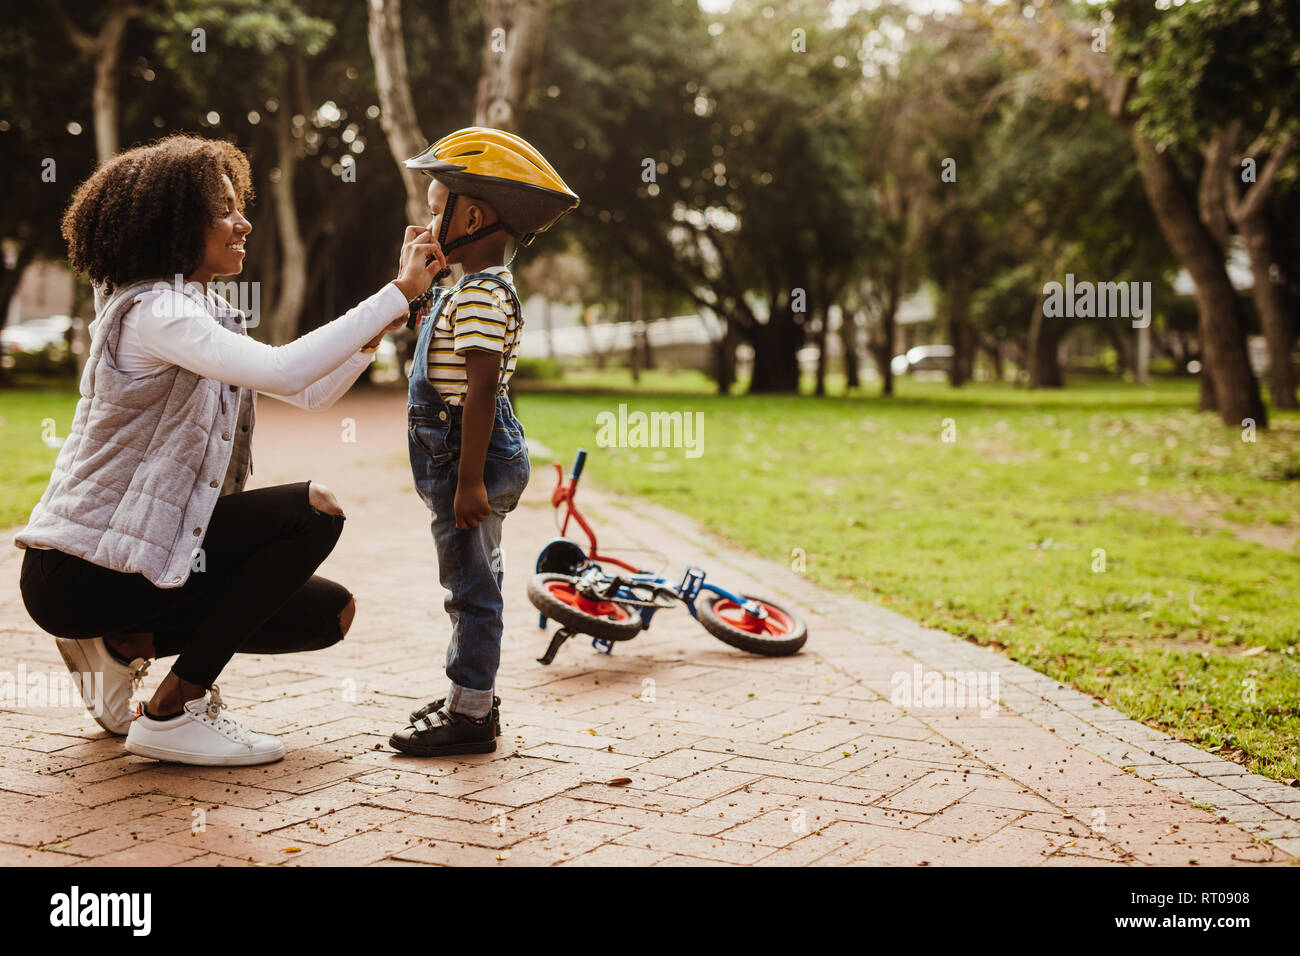 Mutter hilft Sohn tragen Helm für Radfahren im Park. Junge fertig, durch das Tragen von Bike Helm radfahren zu starten. Stockfoto